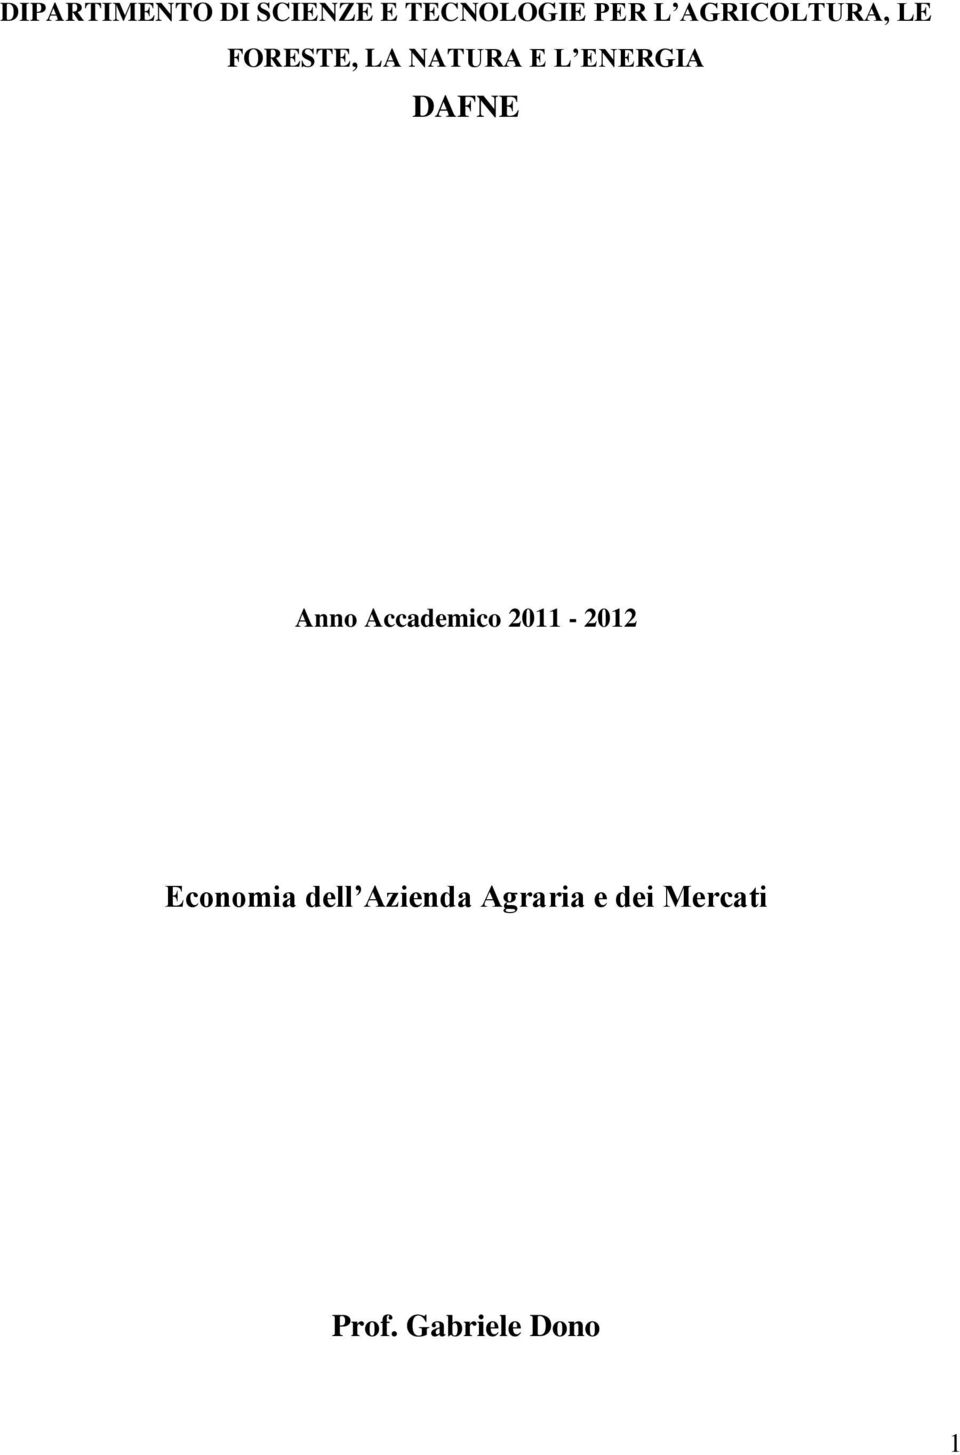 DAFNE Anno Accademico 2011-2012 Economia dell